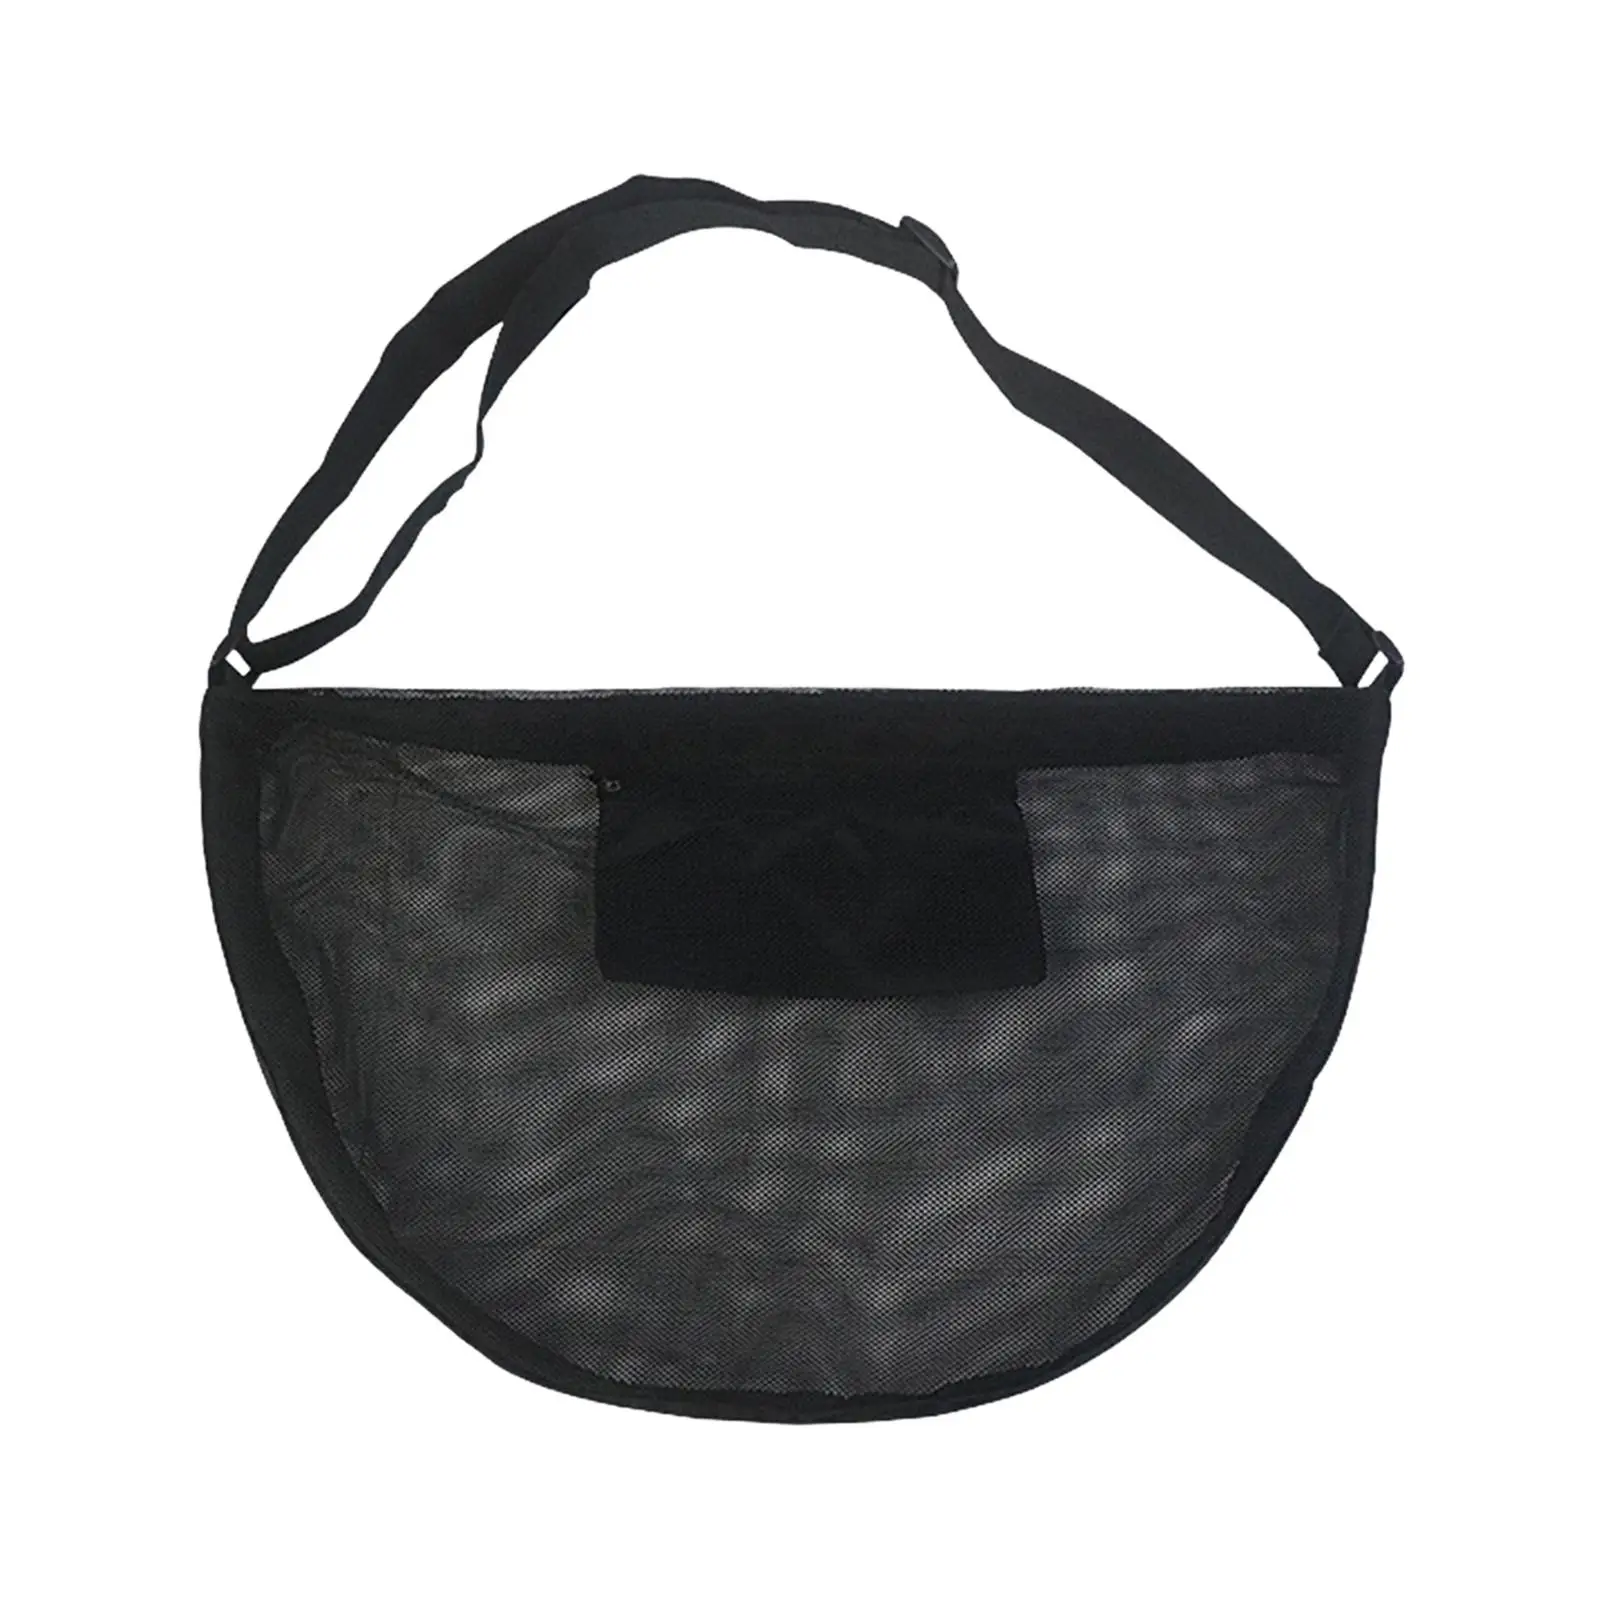 Basketball Shoulder Bag Tote Waterproof Volleyball Ball Storage Bag Basketball Mesh Bag for Softball Volleyball Football